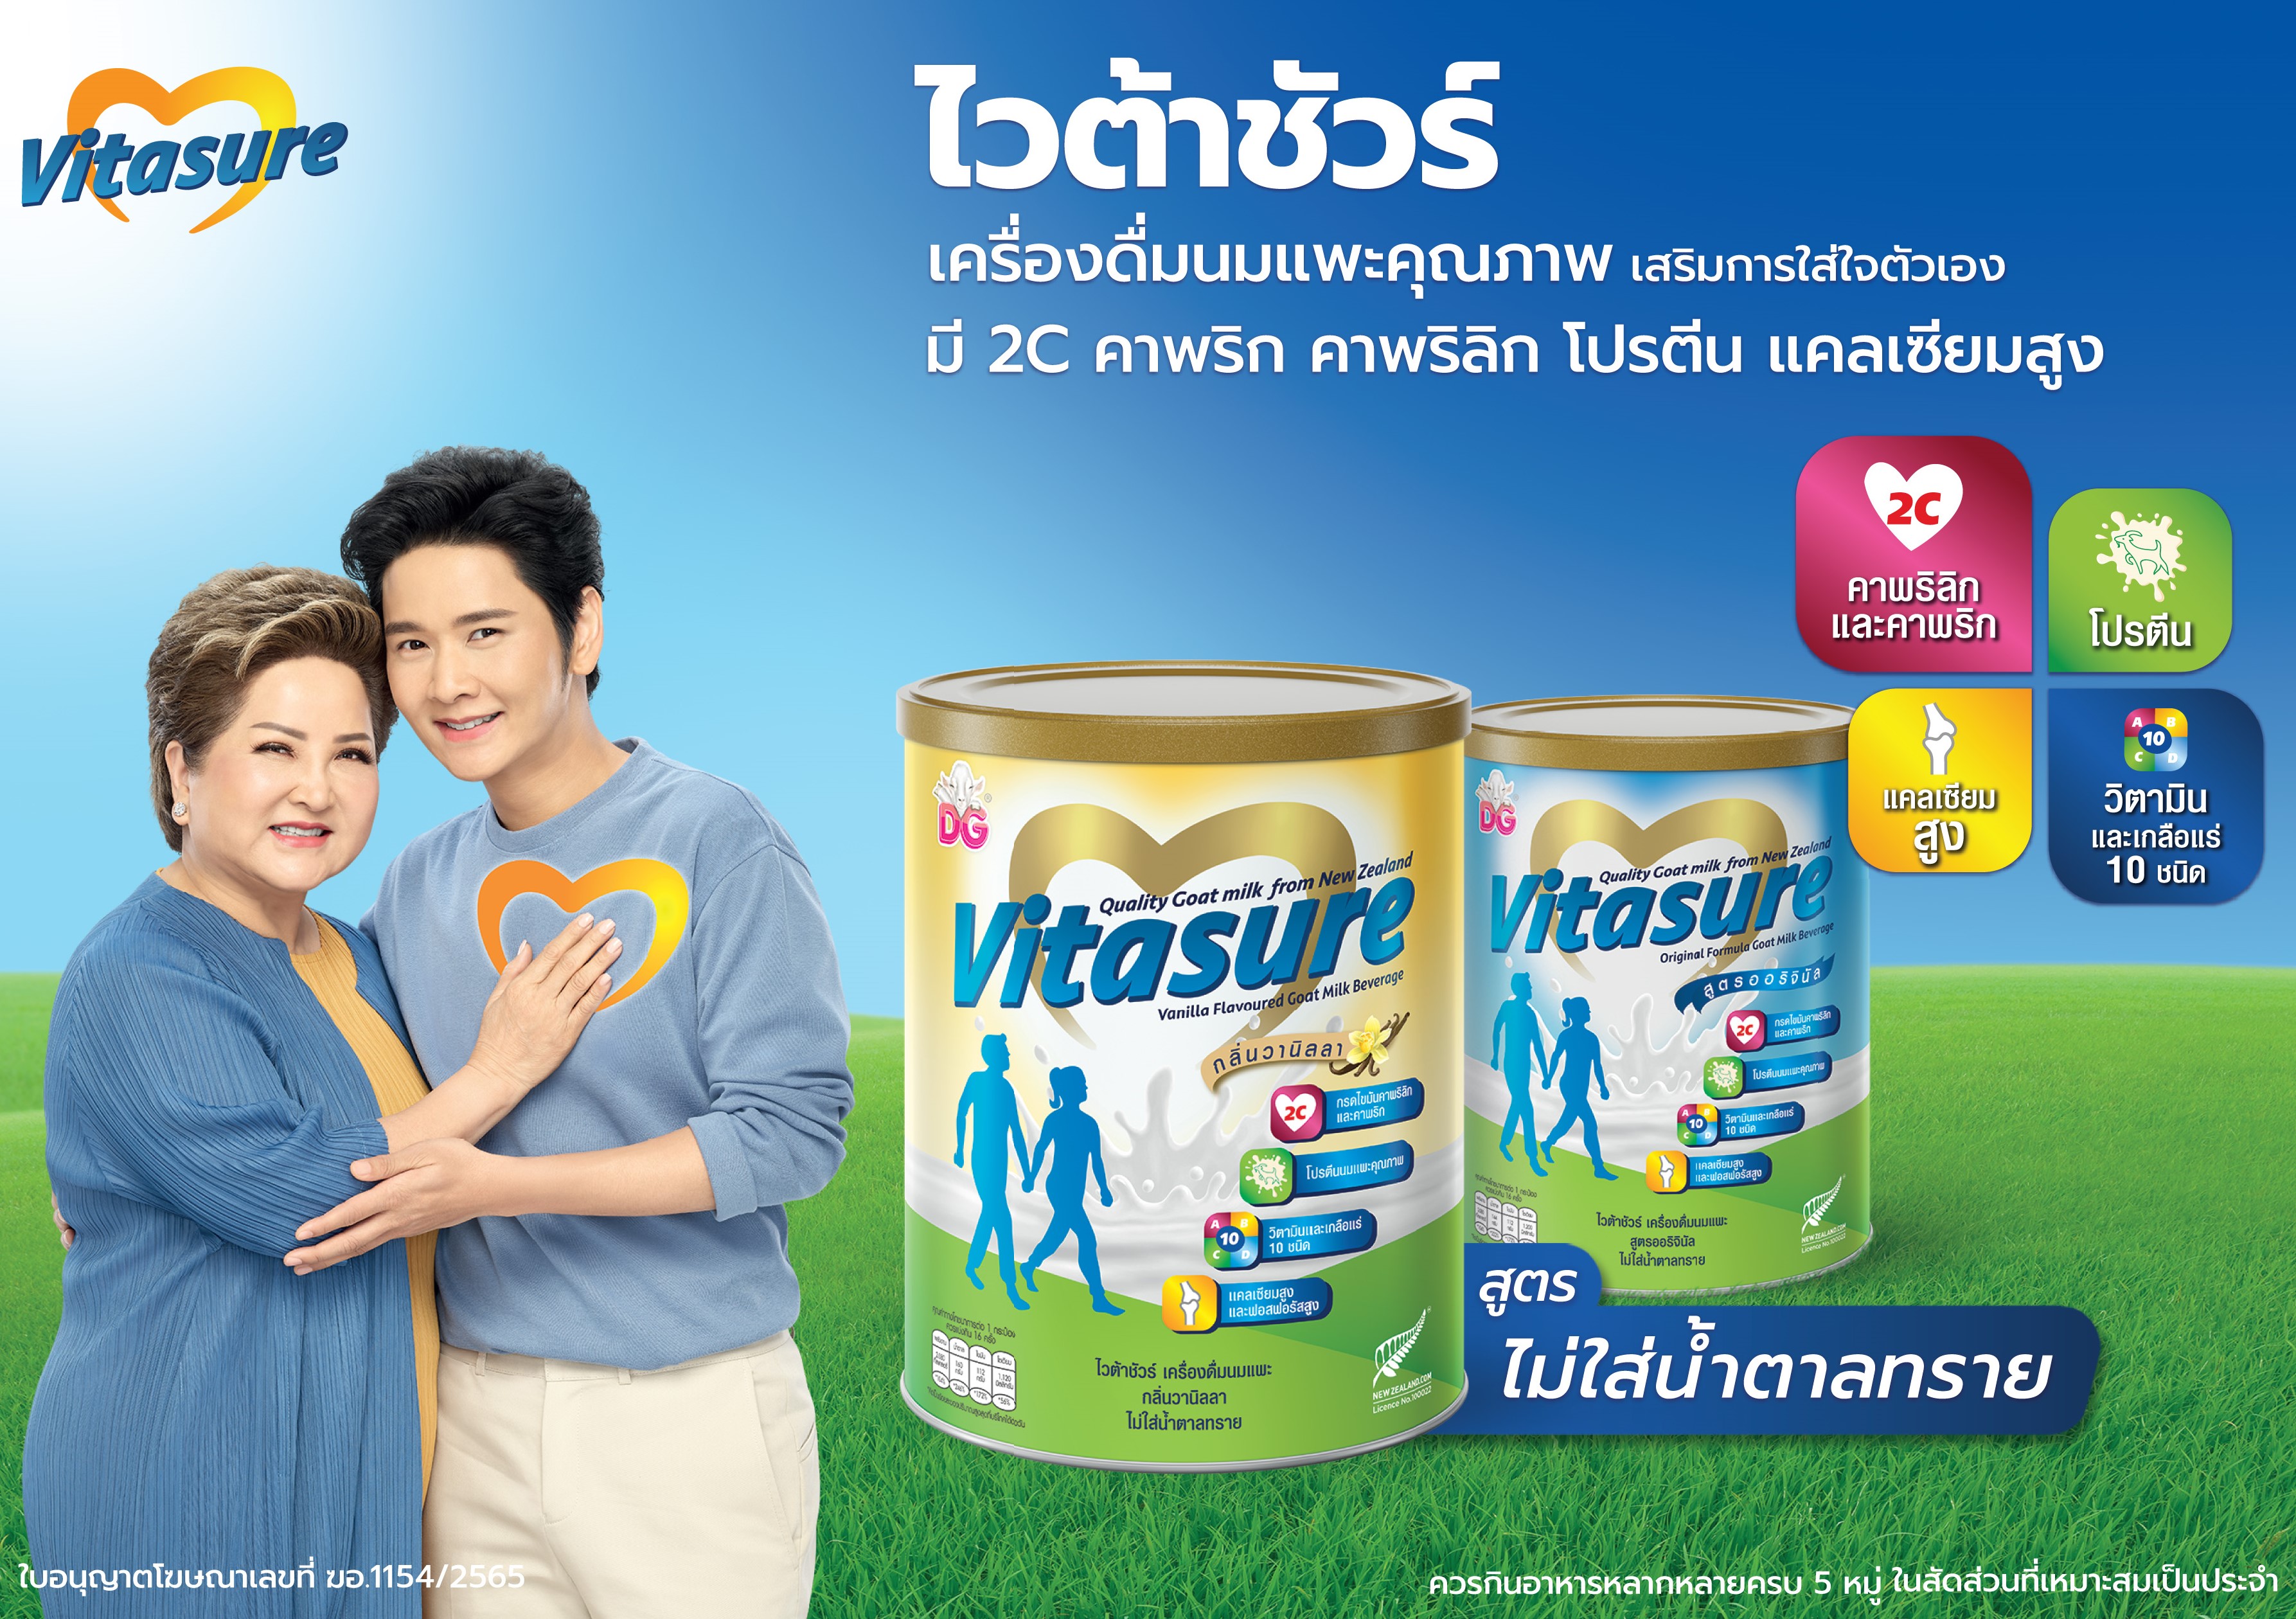 ไวต้าชัวร์ ส่งเครื่องดื่มนมแพะ รุกตลาดรักสุขภาพในไทย ชูนวัตกรรม 2Cกรดไขมันดี เจาะกลุ่ม 40+